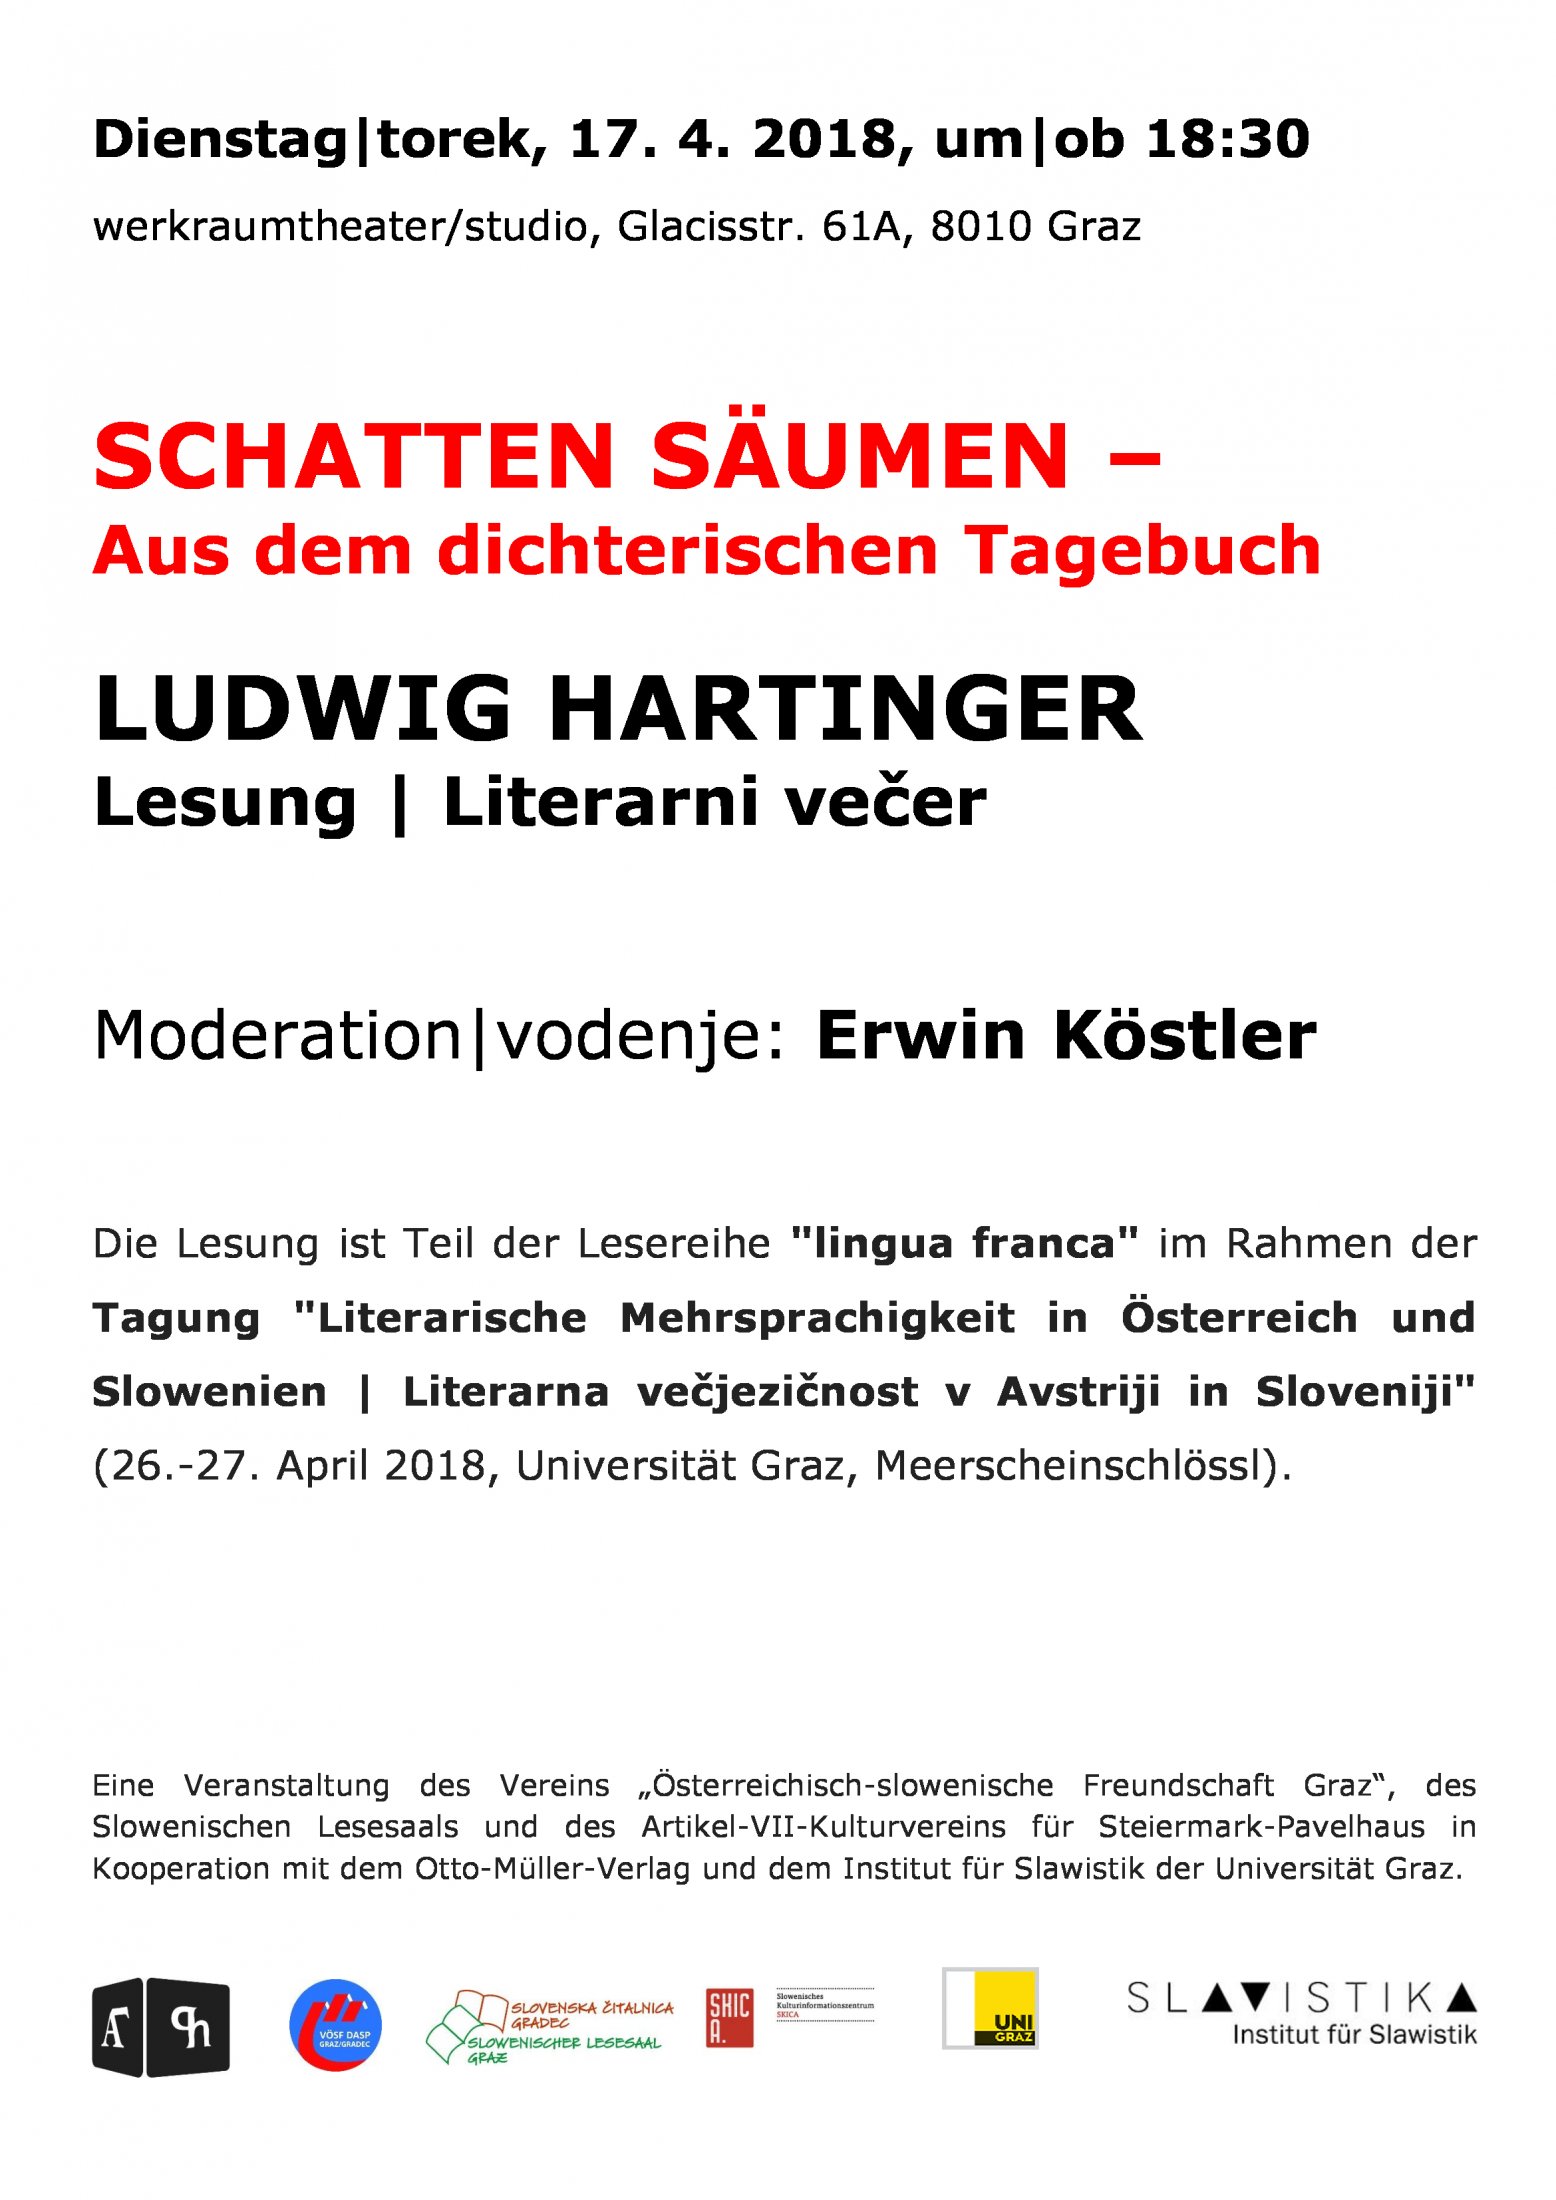 Hartinger-Werkraumfheater -plakat